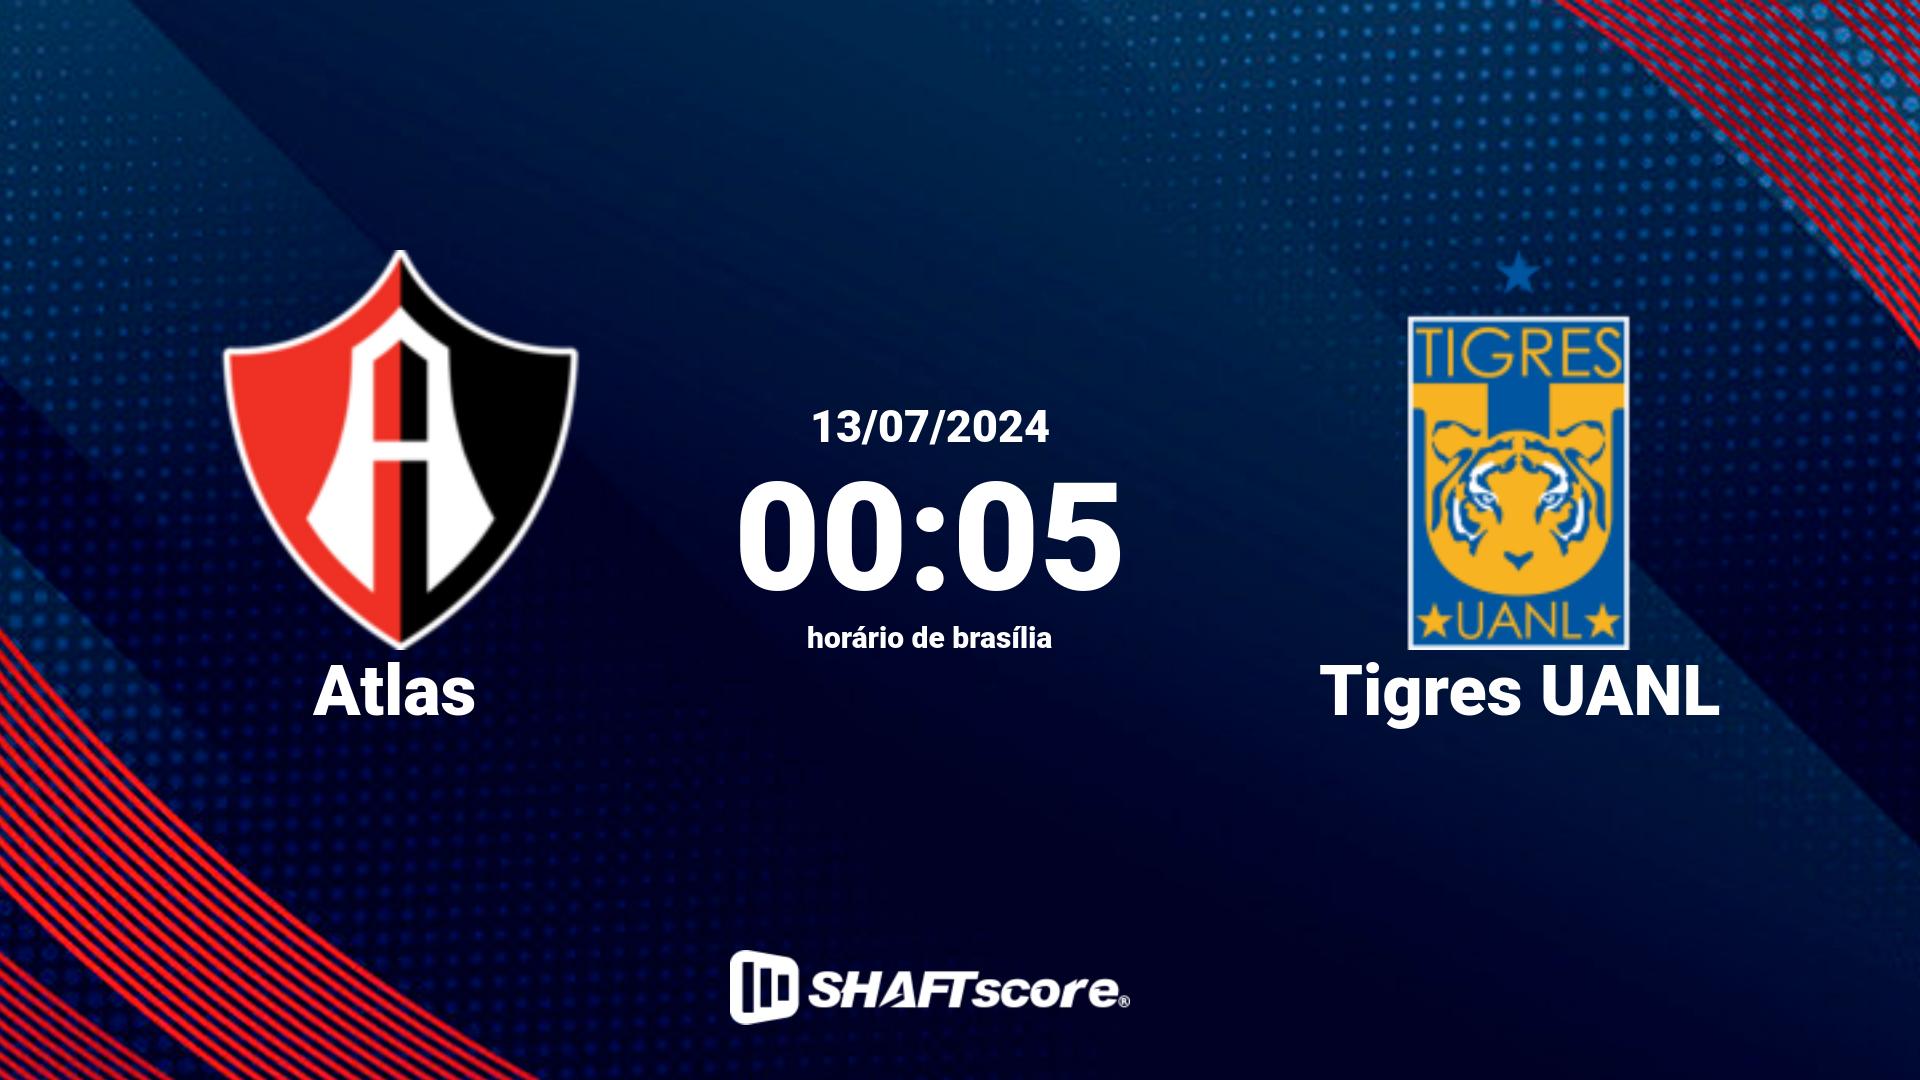 Estatísticas do jogo Atlas vs Tigres UANL 13.07 00:05